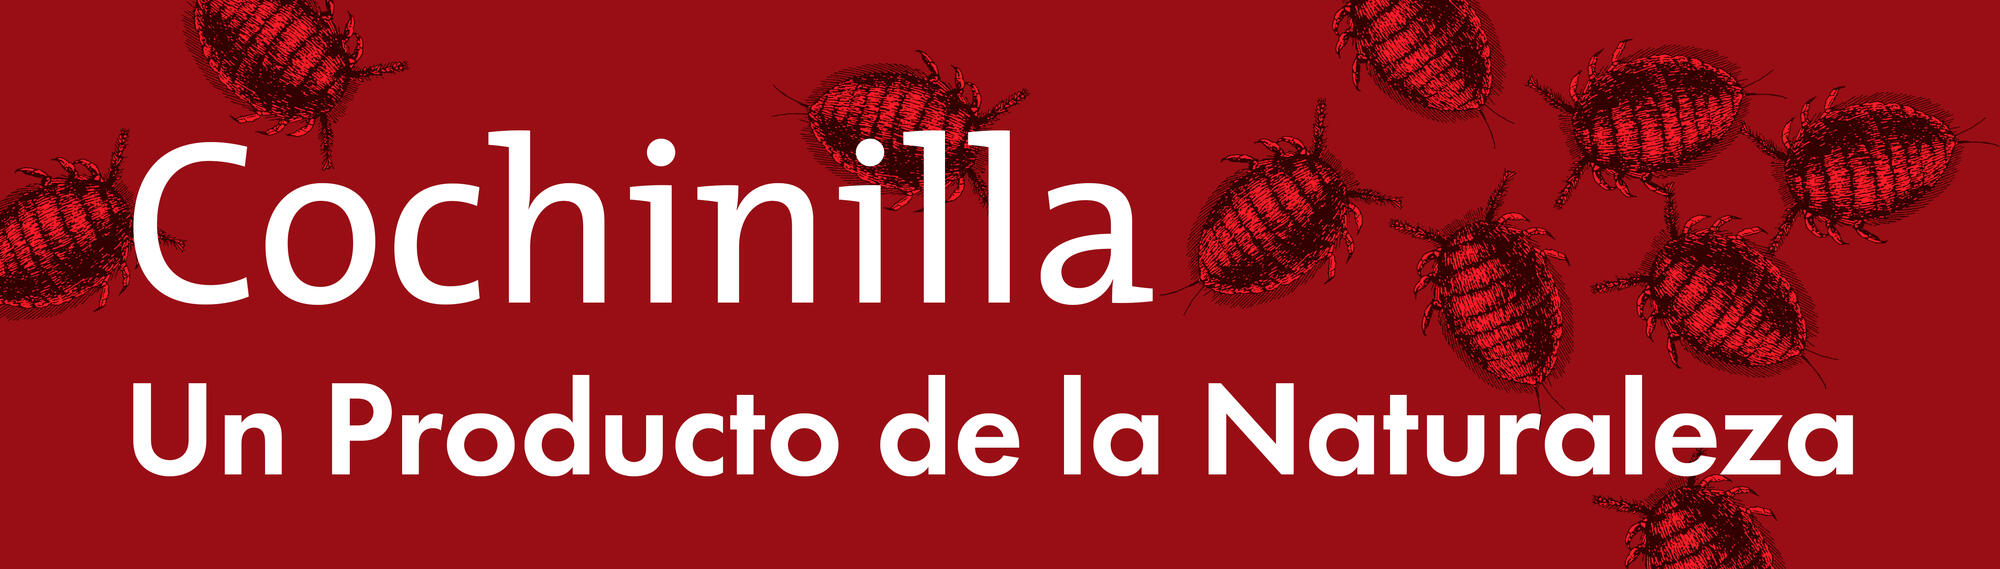 Spanish Text &quot;Cochinilla Un Producto de la Naturaleza.&quot;